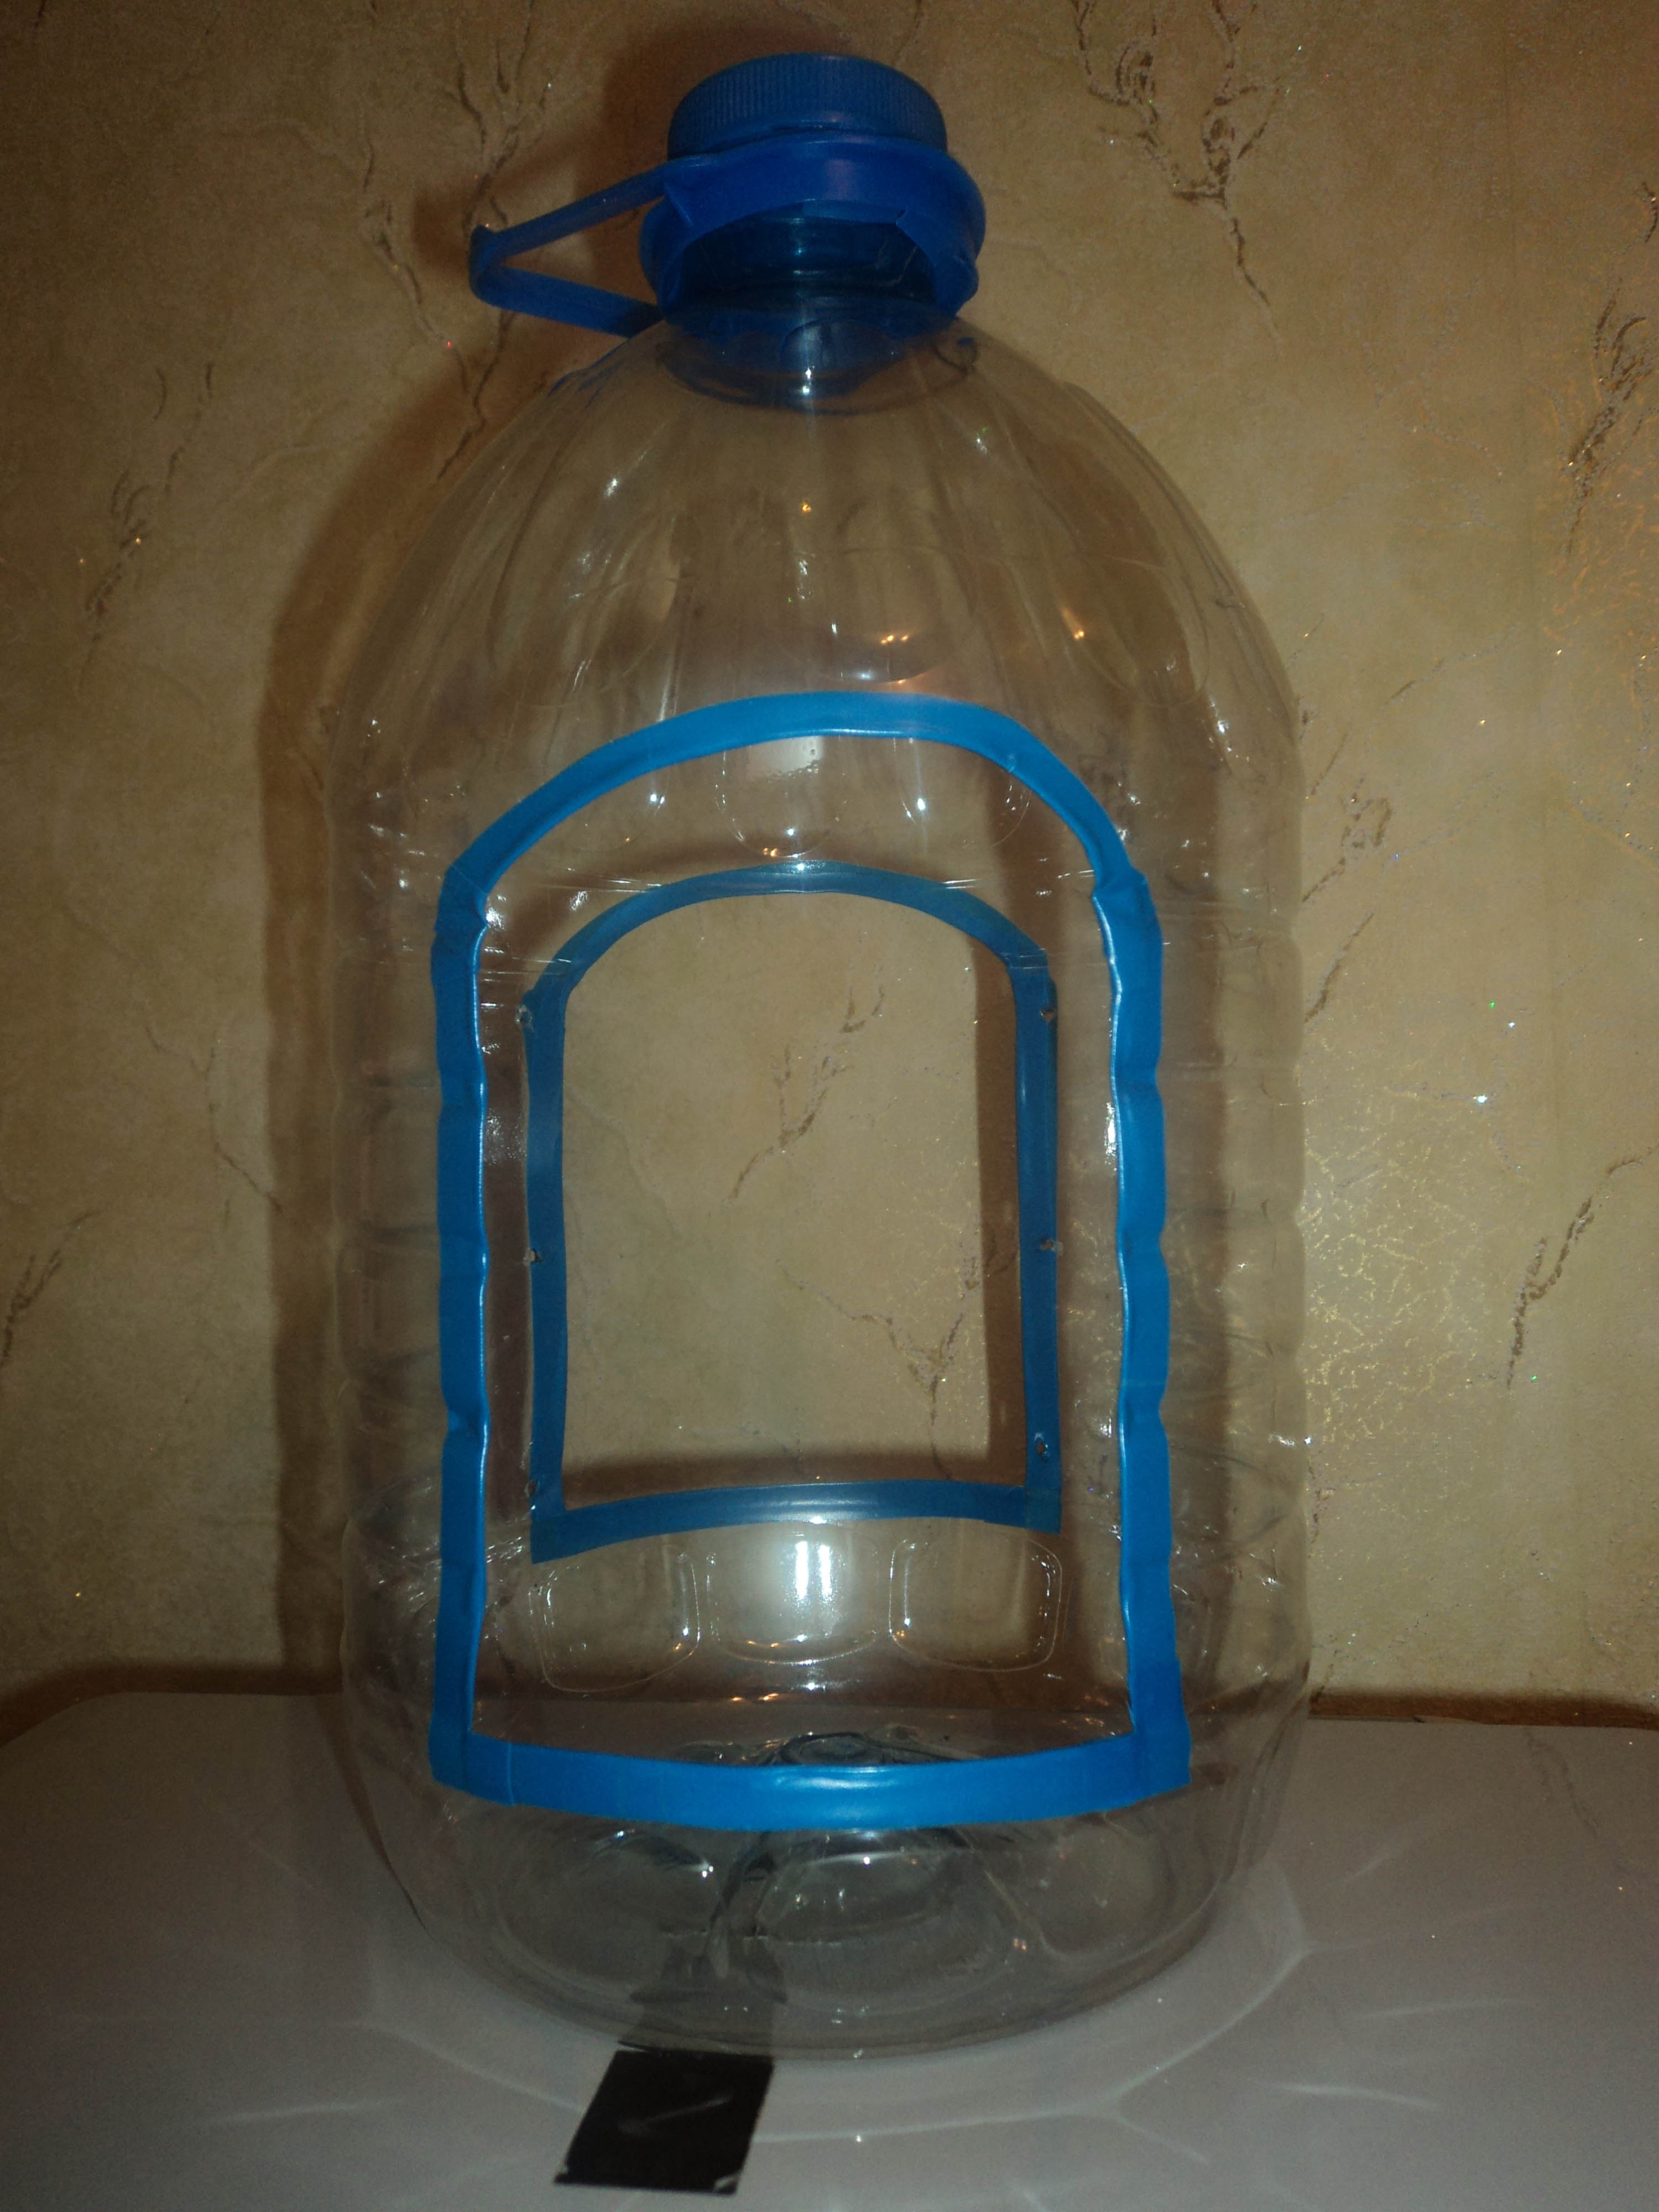 Сделать кормушку своими руками из бутылки: как сделать ее из 2-литровой пластмассовой бутылки своими руками пошагово? Как украсить кормушку?